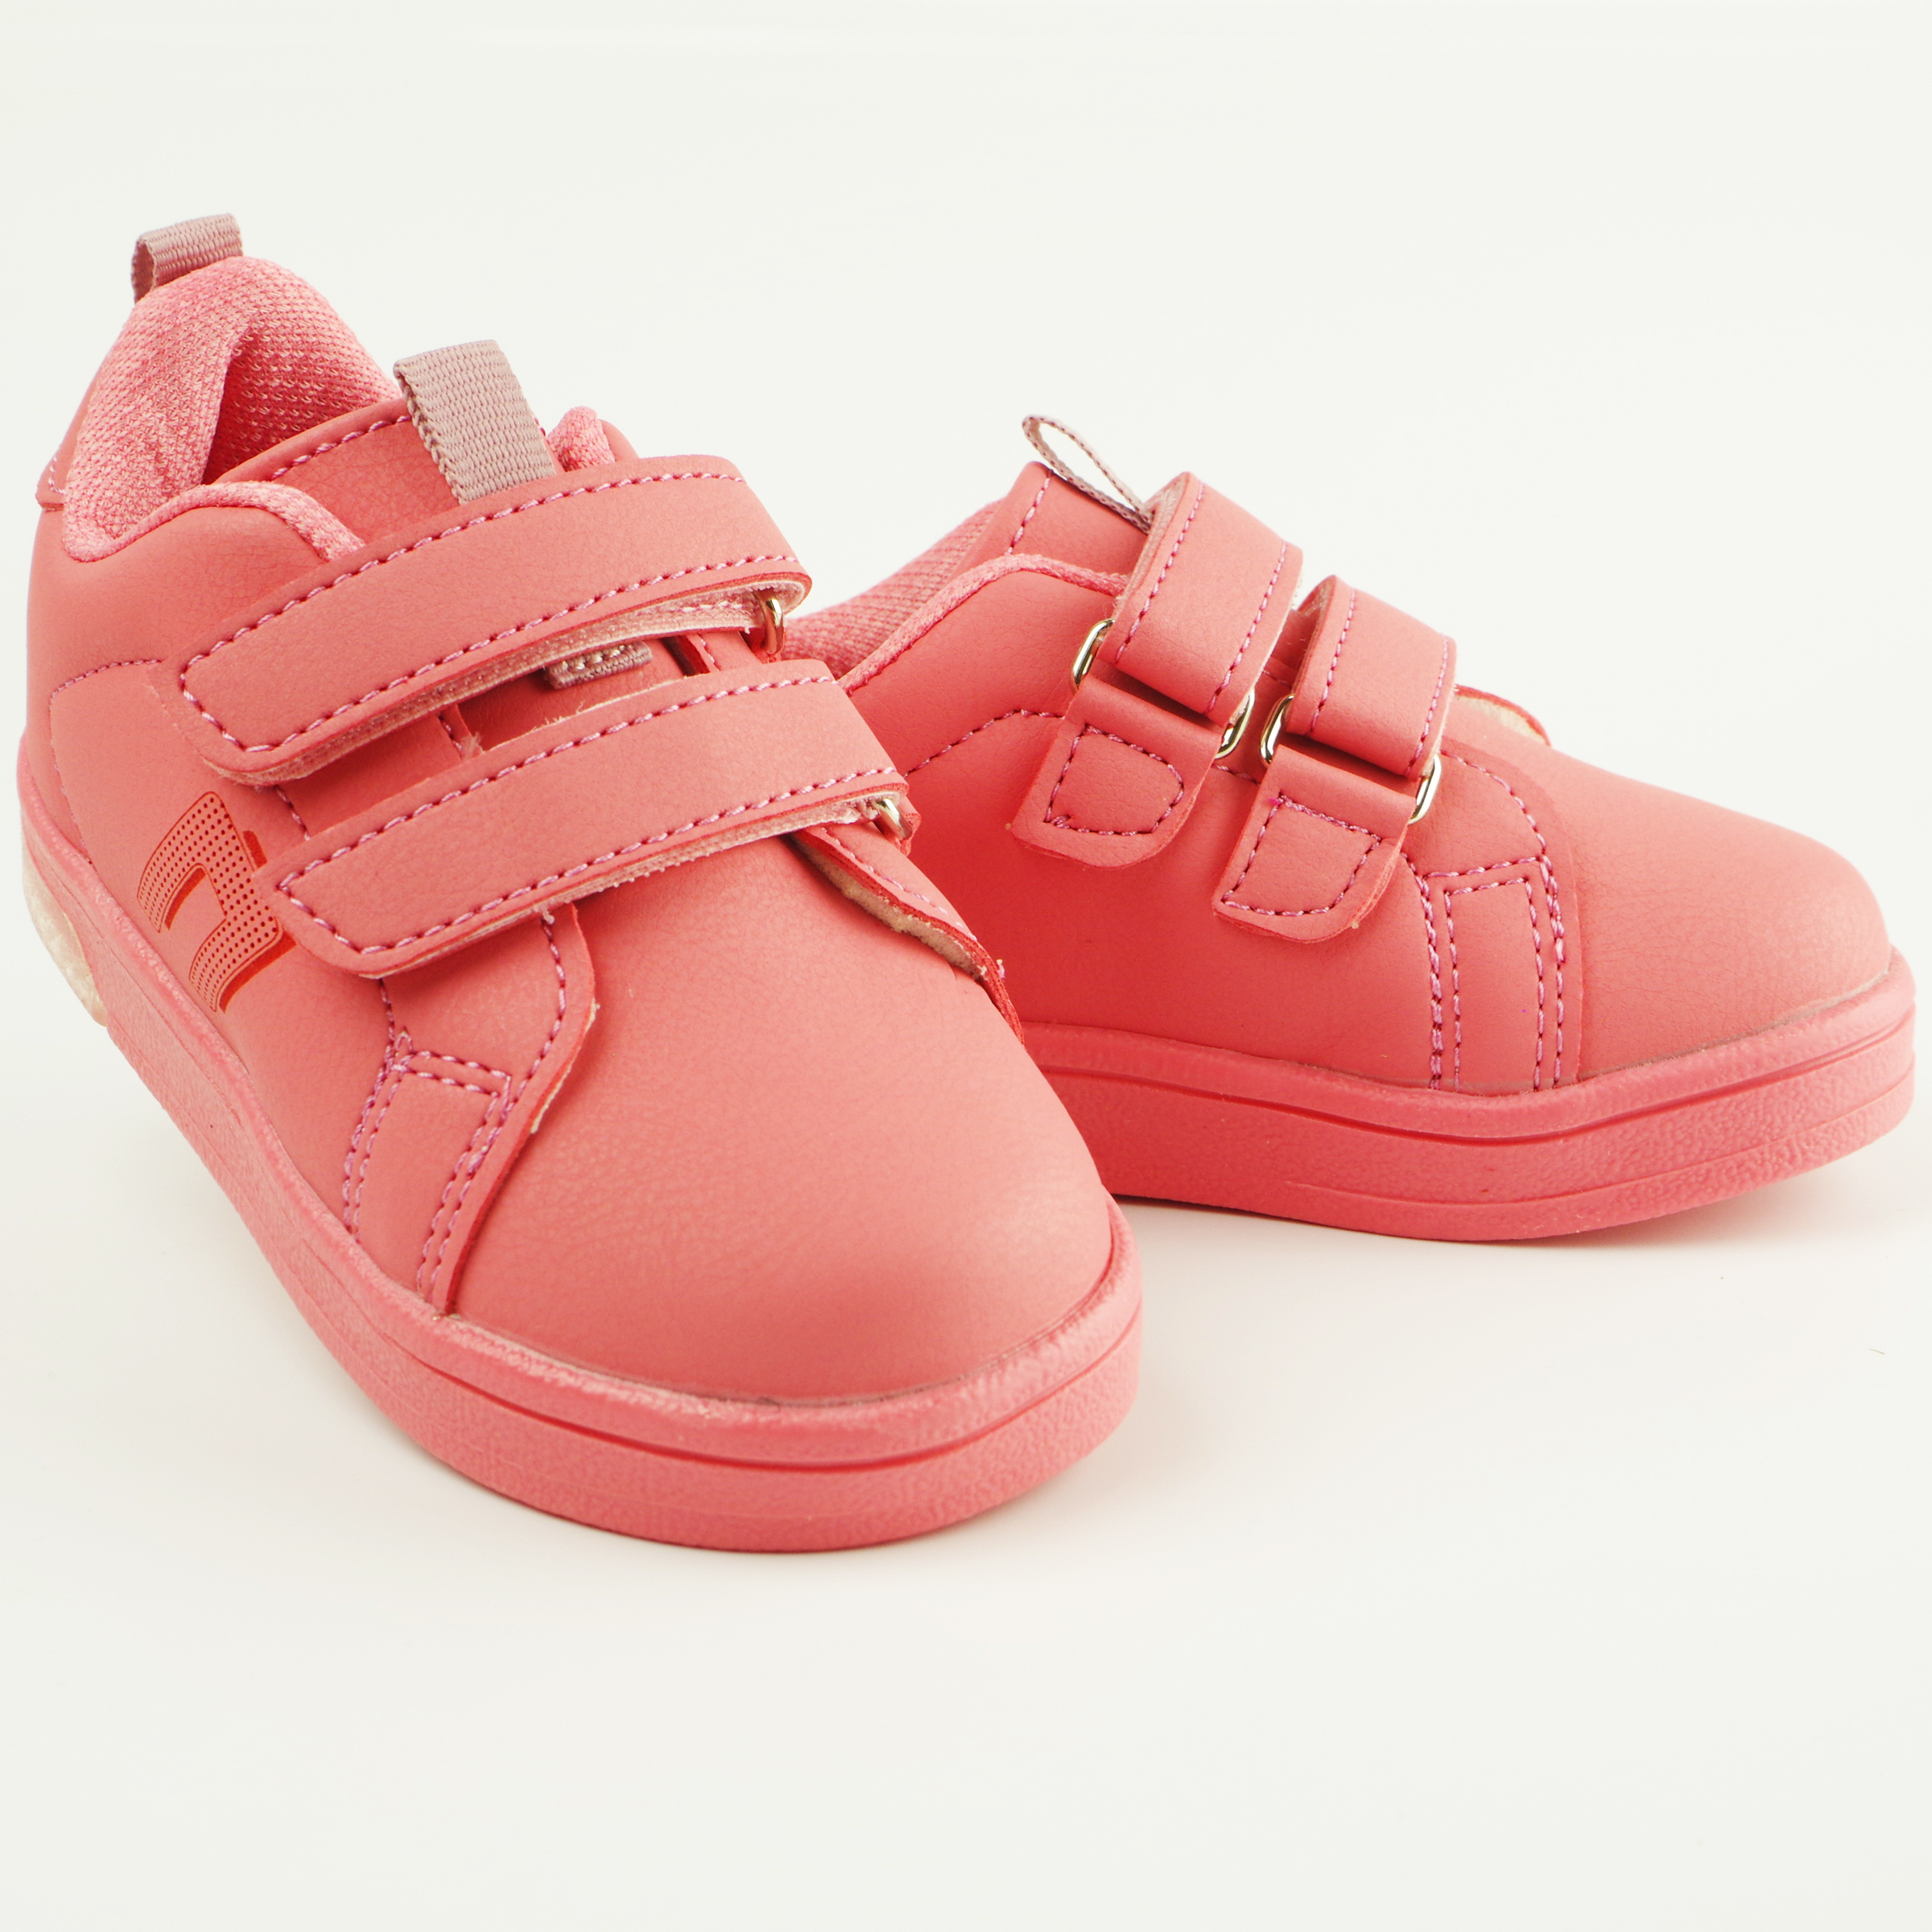 LED Кроссовки детские (2111) материал Искусственная кожа, цвет Розовый  для девочки 22-25 размеры – Sole Kids. Фото 2